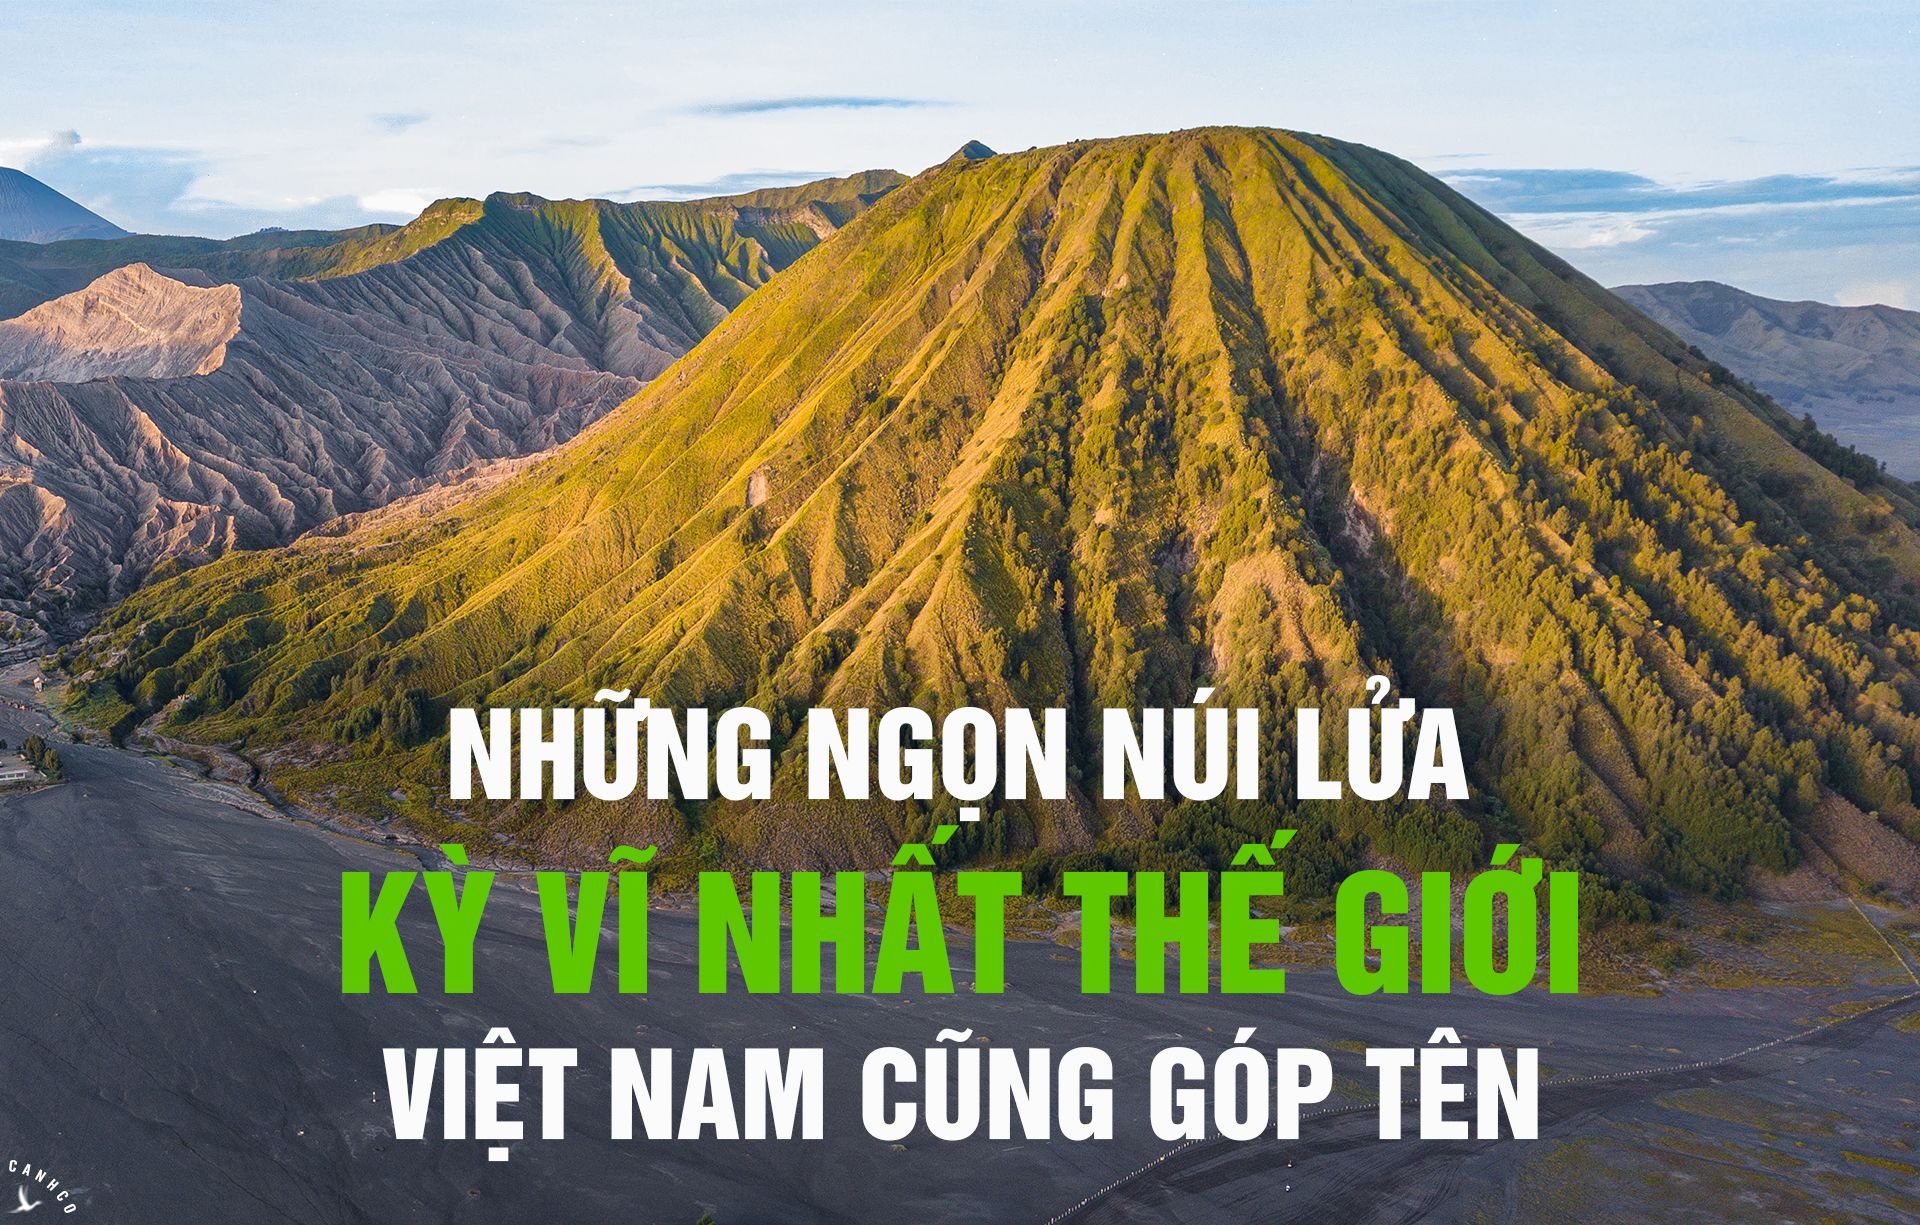 Những ngọn núi lửa kỳ vĩ nhất thế giới, Việt Nam cũng góp tên